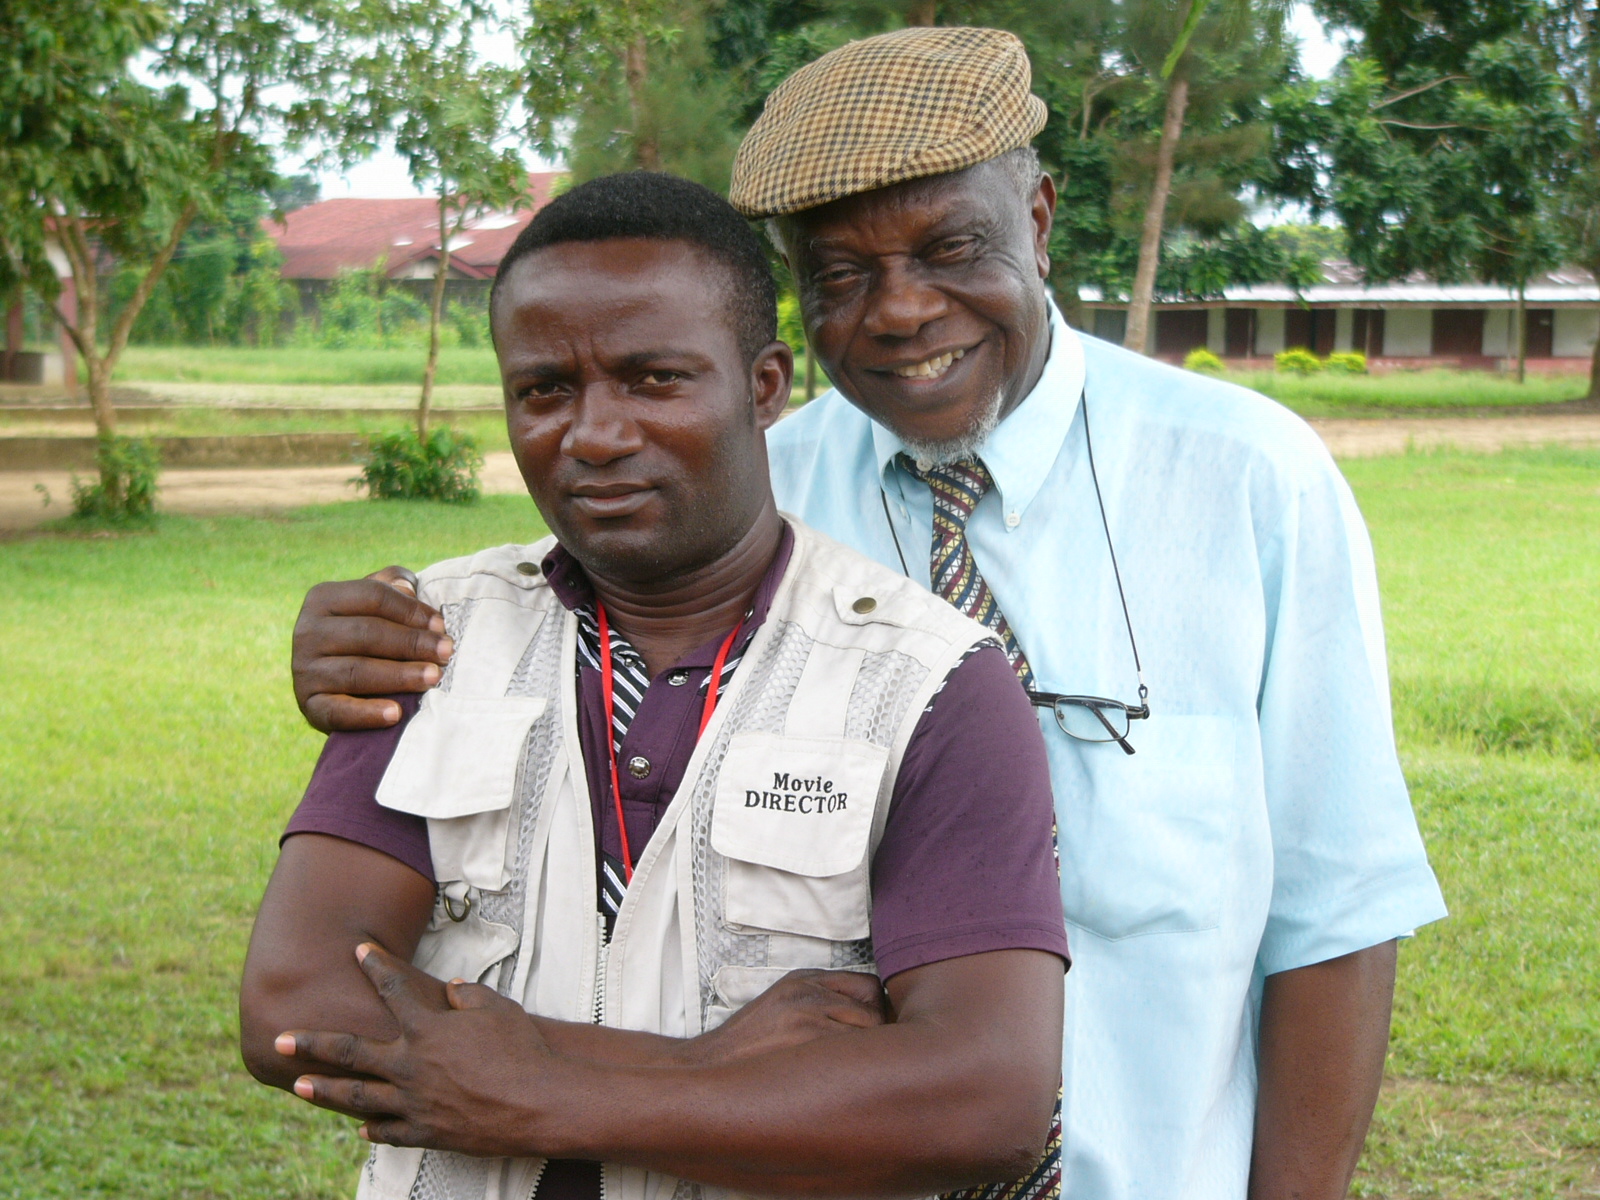 VETRAN ACTOR JUTUS ESIRI AND OBED JOE NIGERIA FILM MAKER AND DIRECTOR